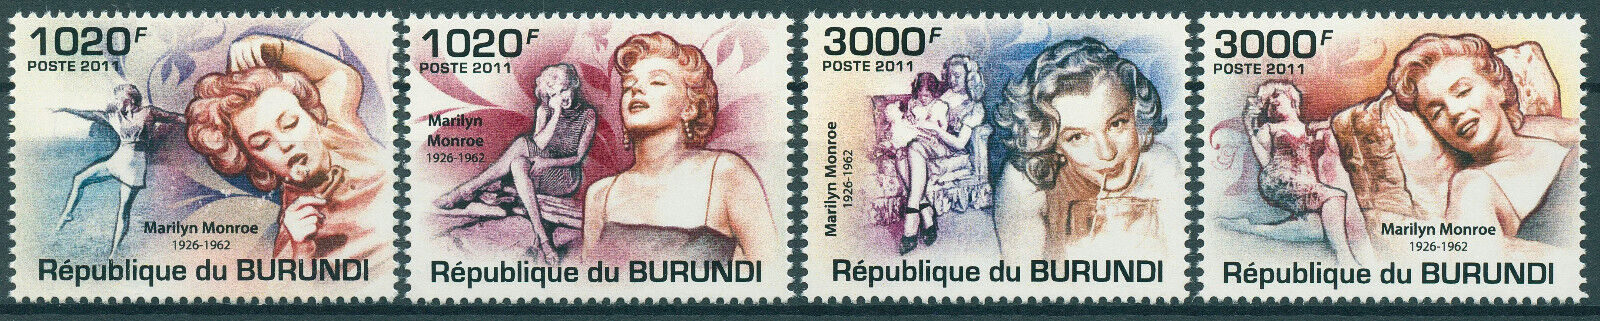 Burundi 2011 MNH Marilyn Monroe Stamps Celebrities Actresses Movies Film 4v Set